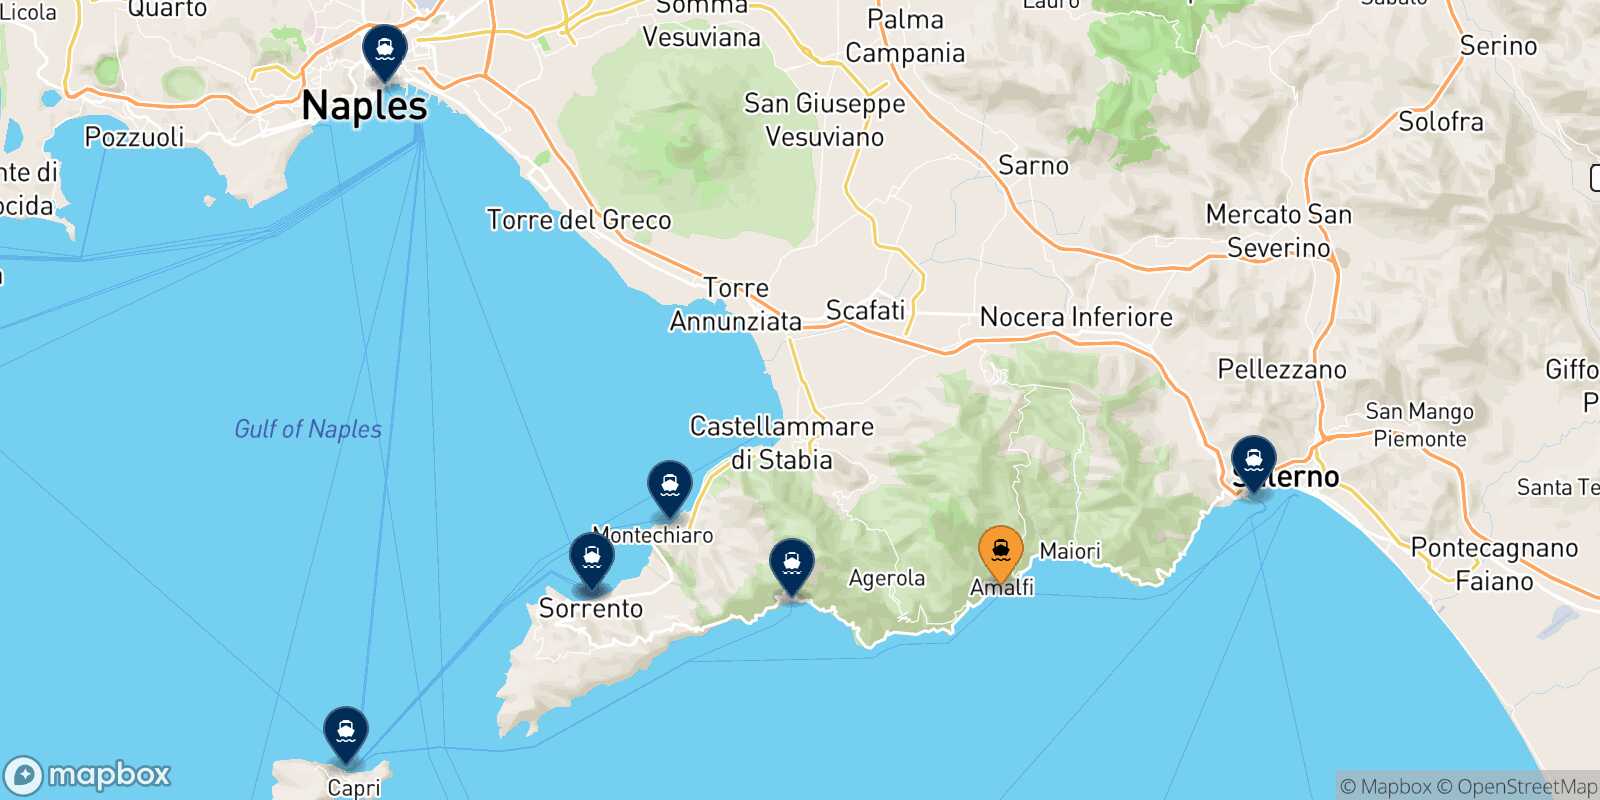 Mappa delle destinazioni raggiungibili da Amalfi